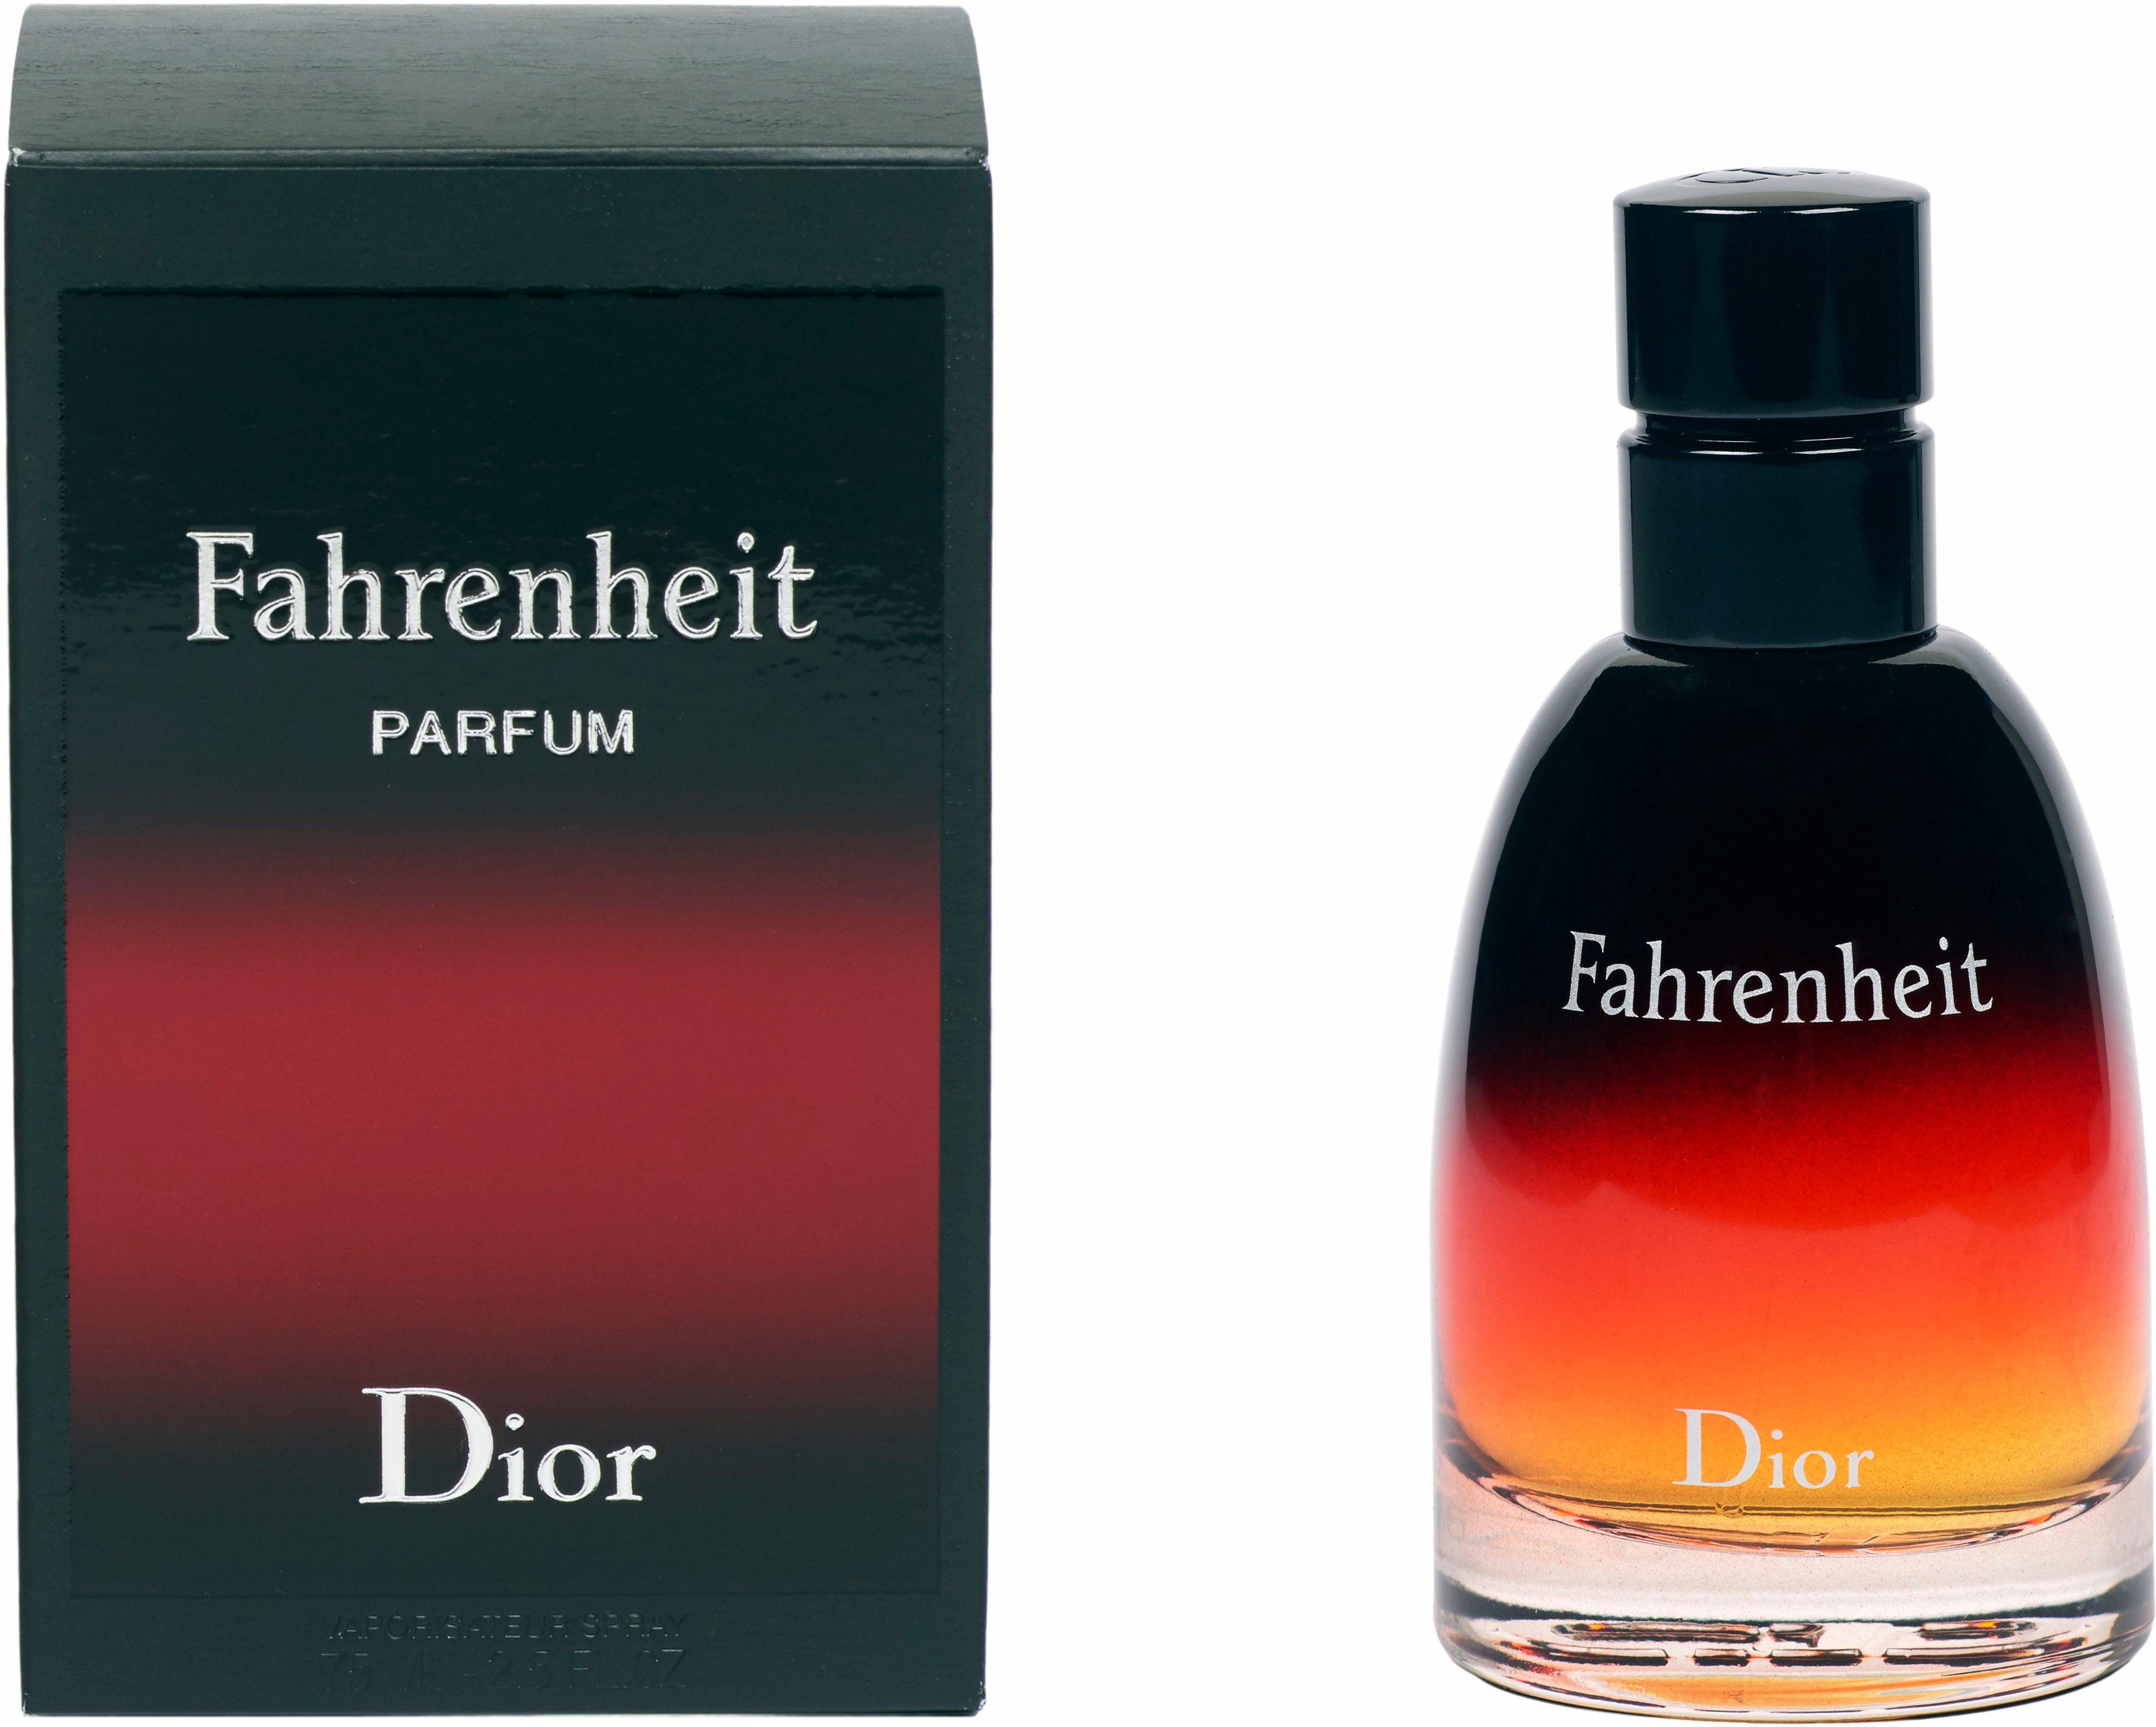 Fahrenheit Parfum Eau de Dior